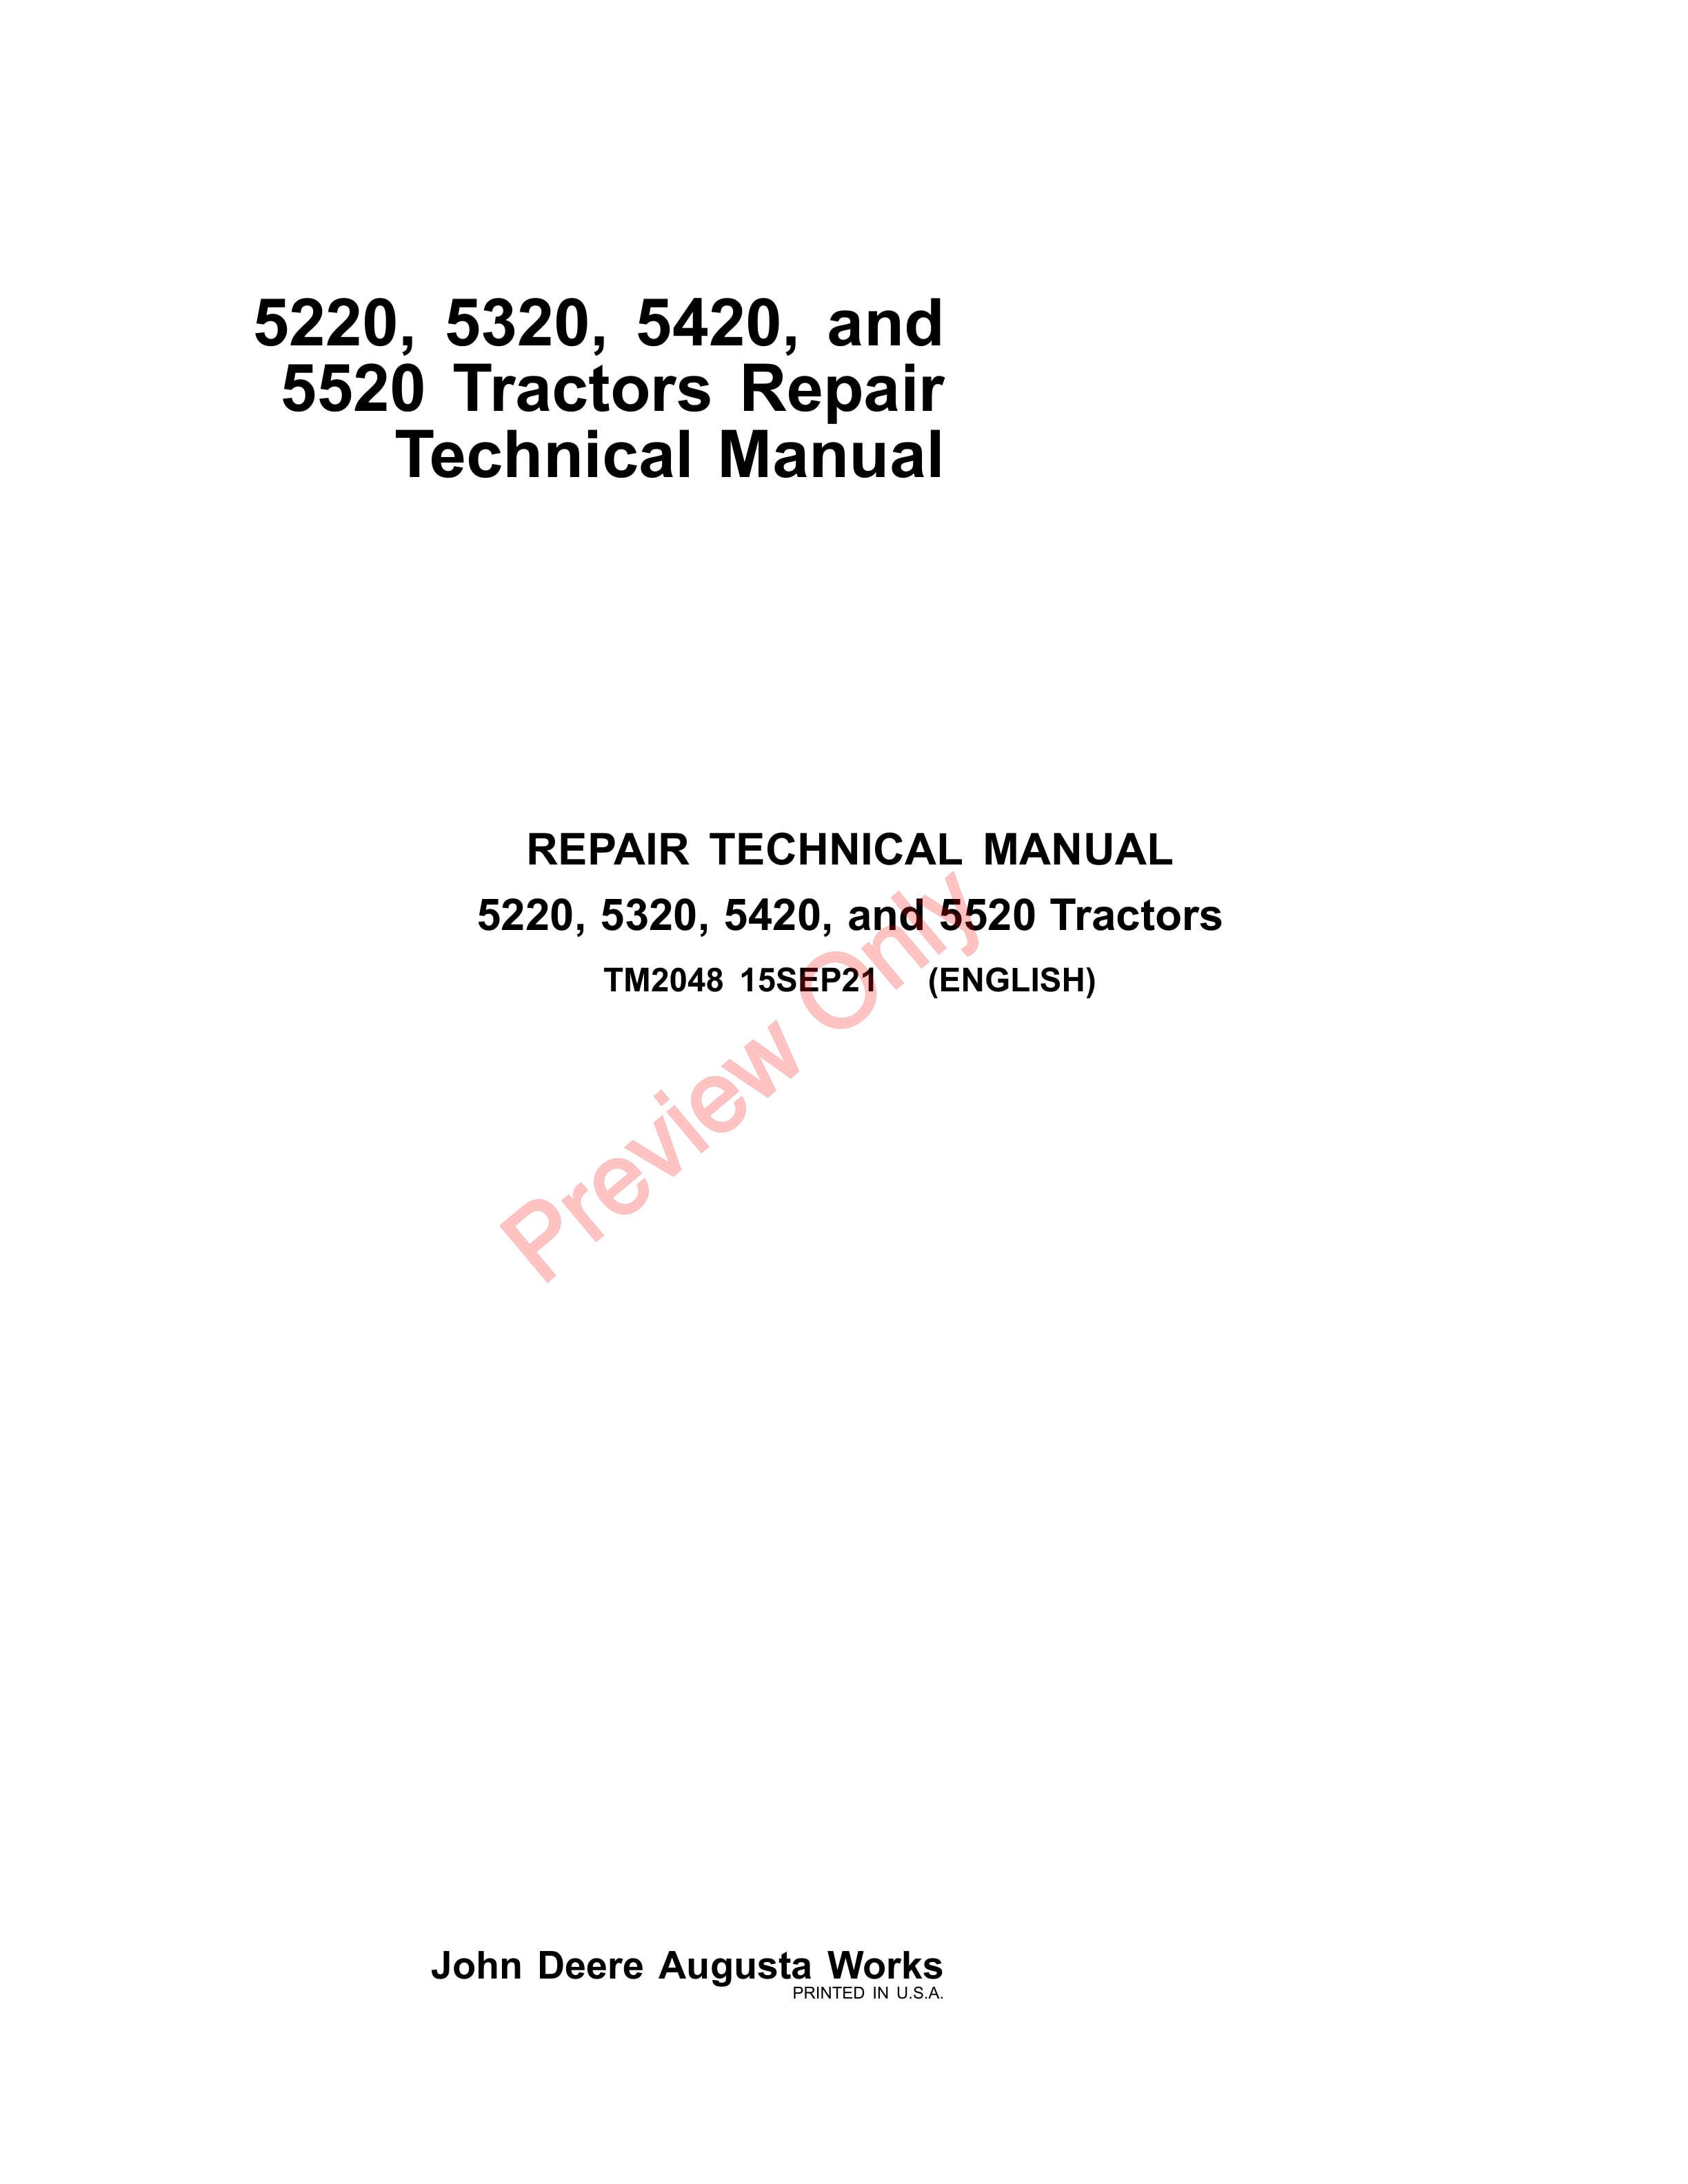 John Deere 5220, 5320, 5420, and 5520 Tractors Repair Technical Manual TM2048 15SEP21-1